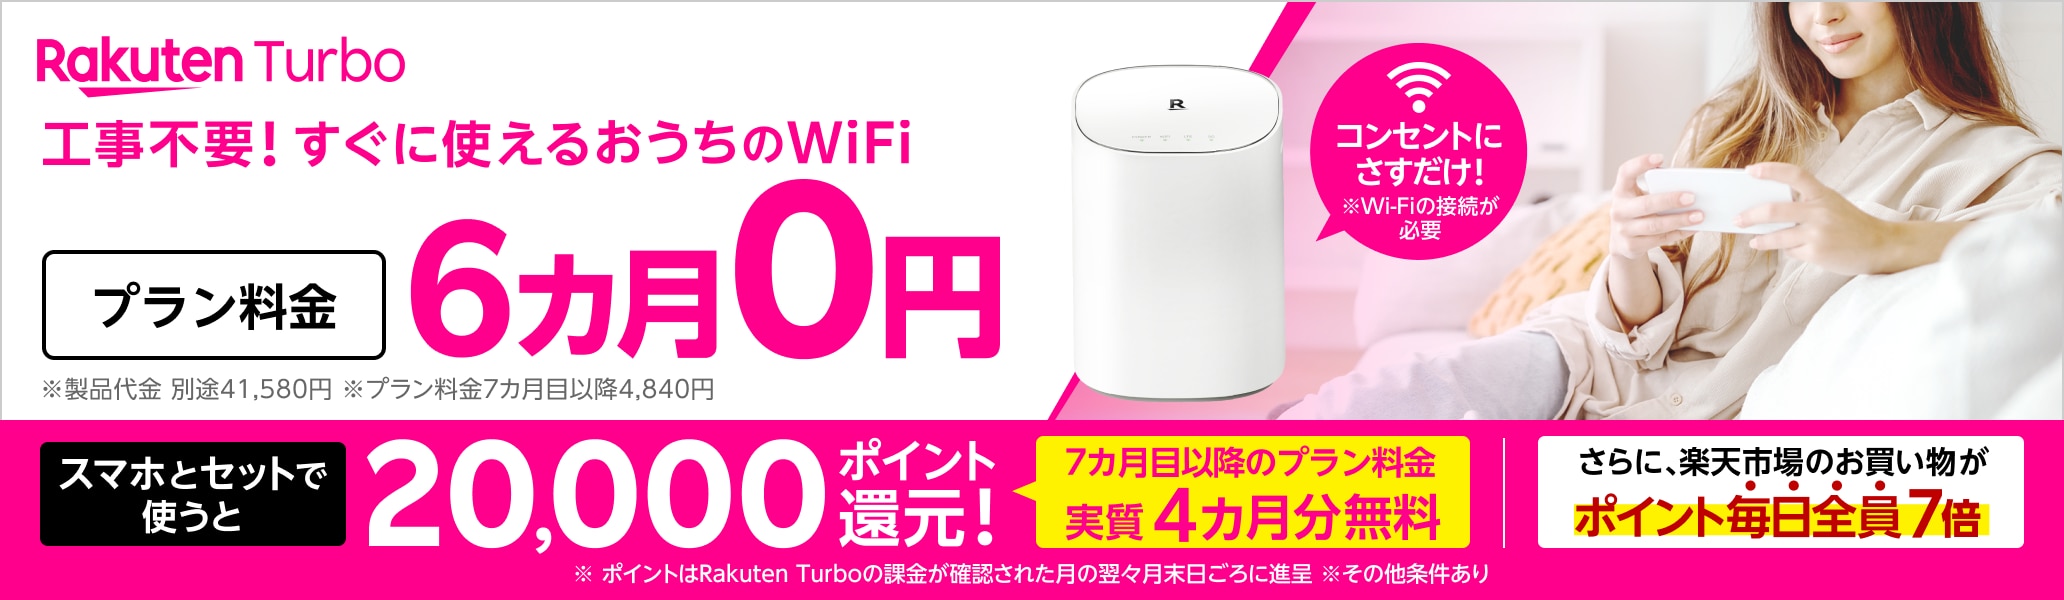 Rakuten Turbo 工事不要！すぐに使えるおうちのWi-Fi コンセントにさすだけ！ プラン料金6カ月0円 さらに、スマホとセットで使うと20,000ポイント還元！7カ月目以降のプラン料金が実質4カ月無料 さらに、楽天市場のお買い物がポイント毎日全員7倍 ※Wi-Fiの接続が必要 ※製品代金 別途41,580円。月額プラン料金7カ月目以降4,840円 ※ポイントはRakuten Turboの課金が確認された月の翌々月末日ごろに進呈 ※その他条件あり